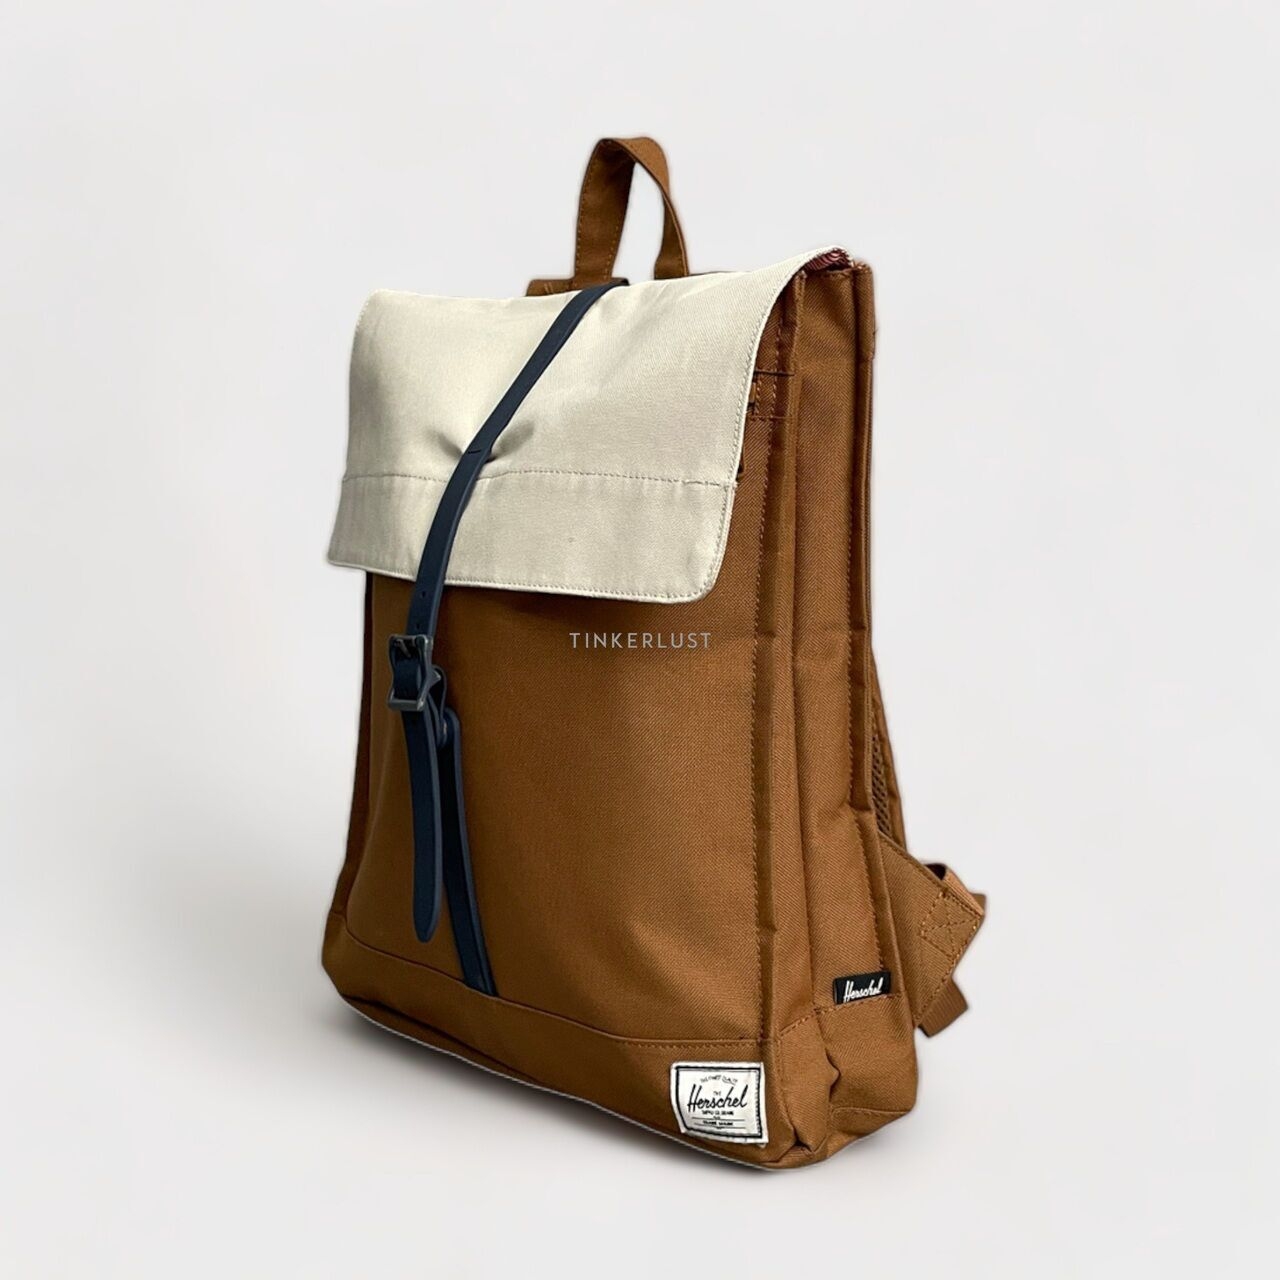 Herschel Brown Backpack